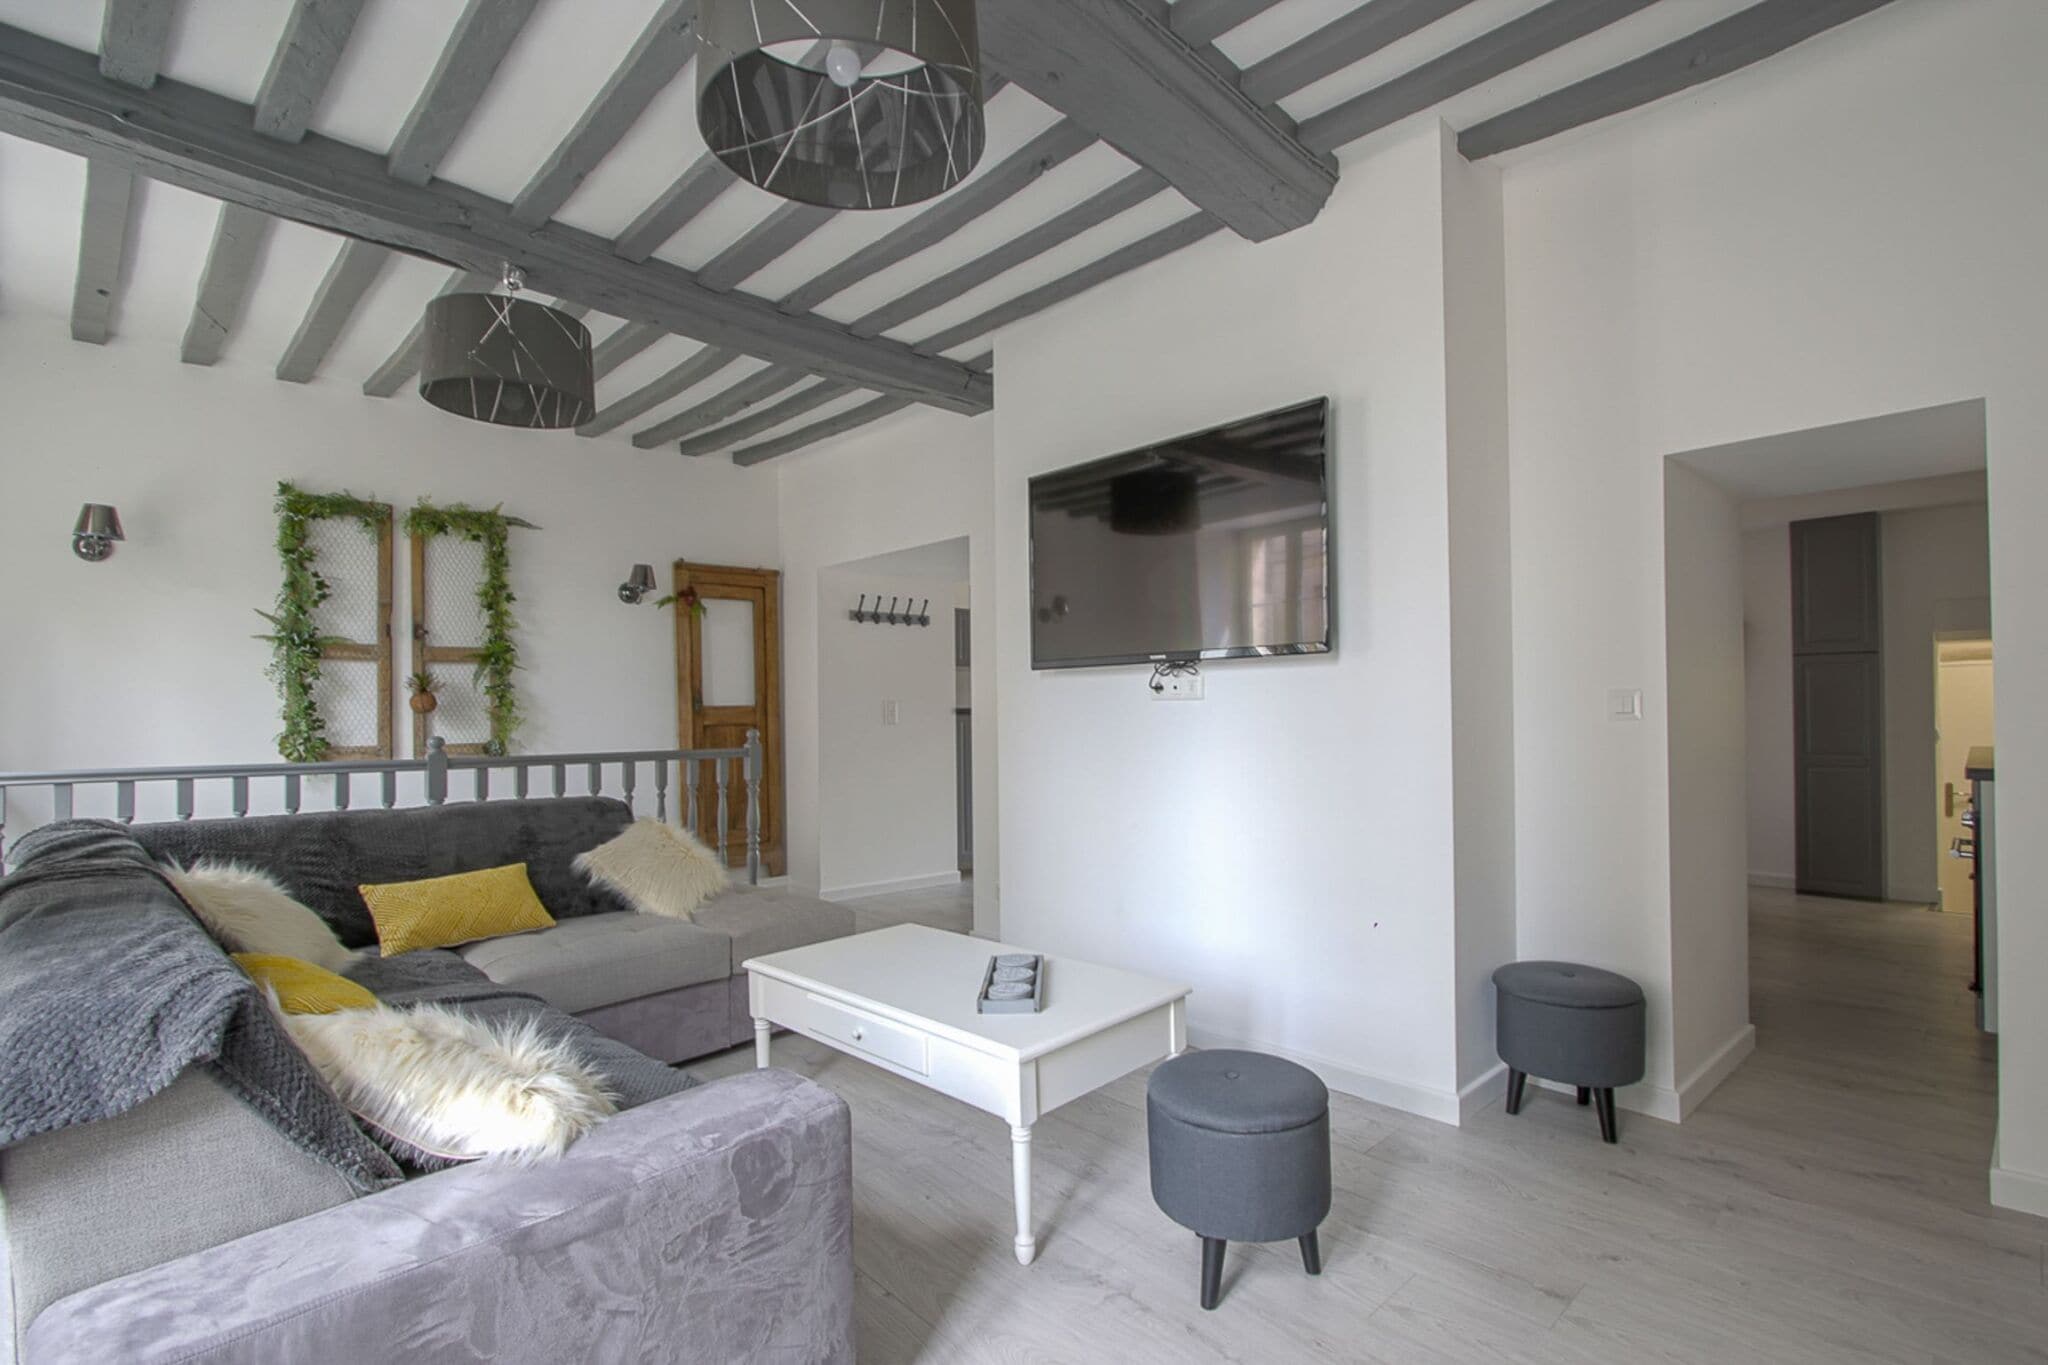 Schöne Wohnung in Bayeux. Terrasse / Wohnzimmer und Küche werden geteilt